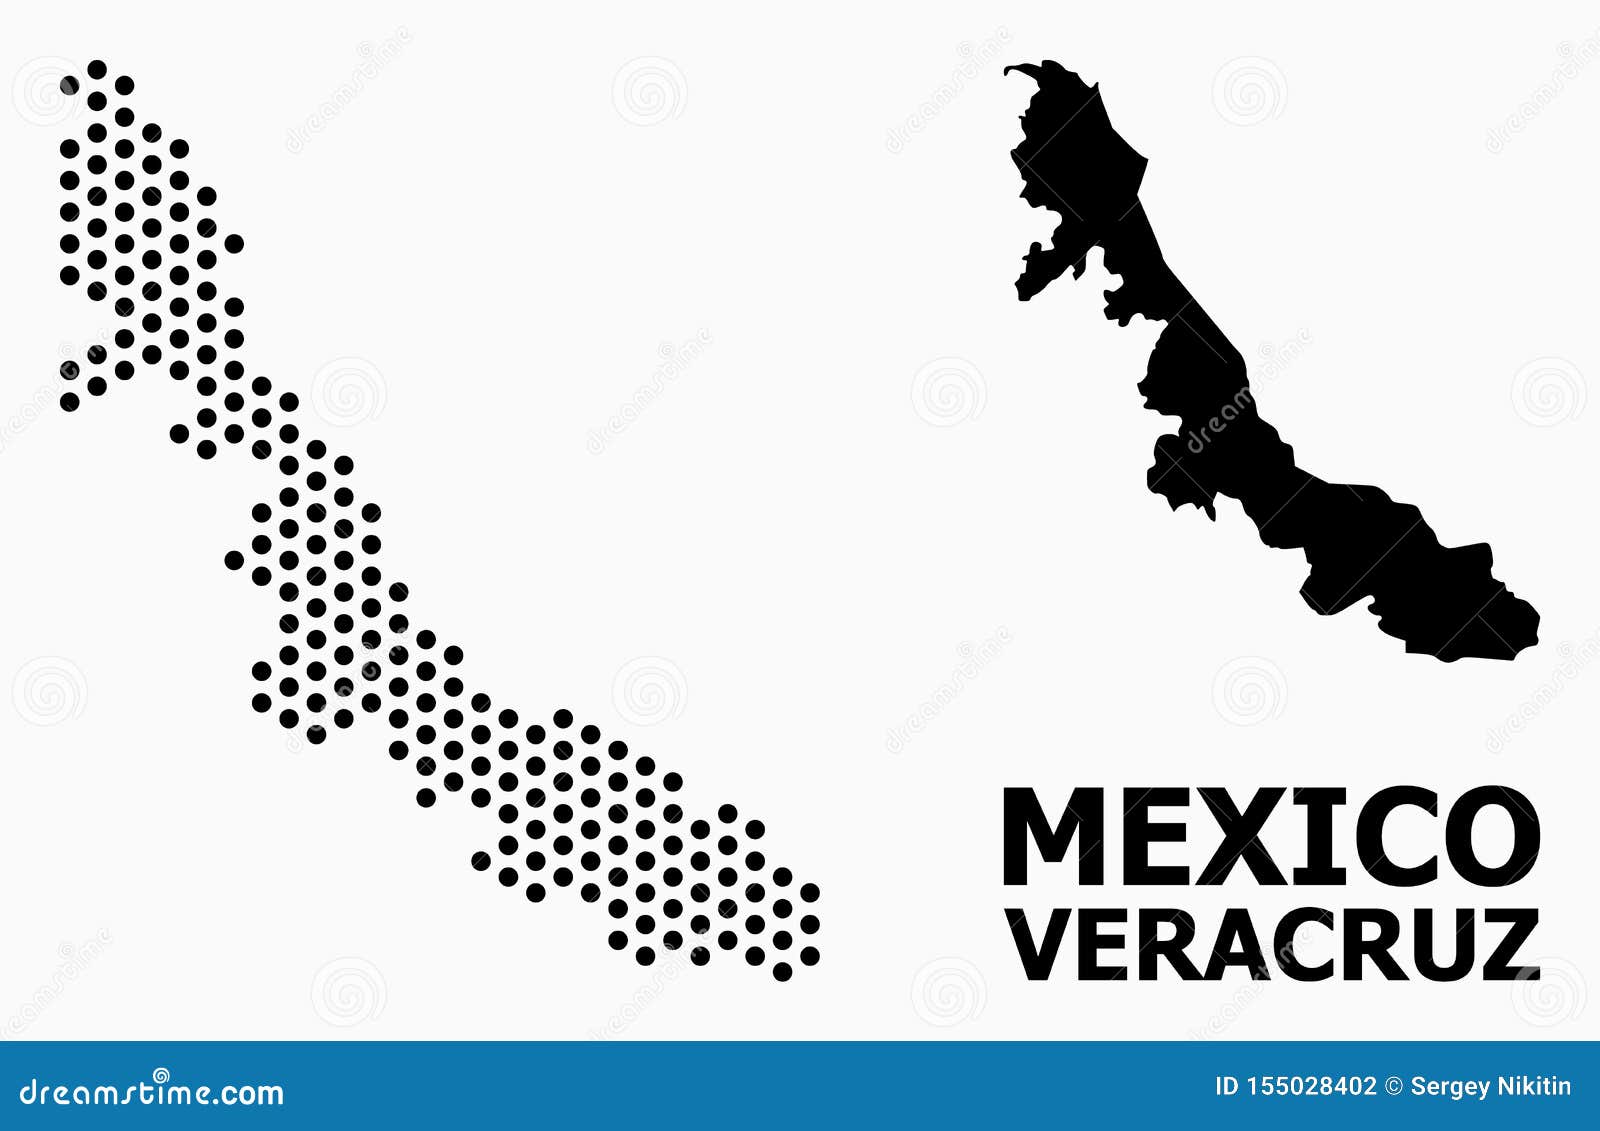 pixel pattern map of veracruz state